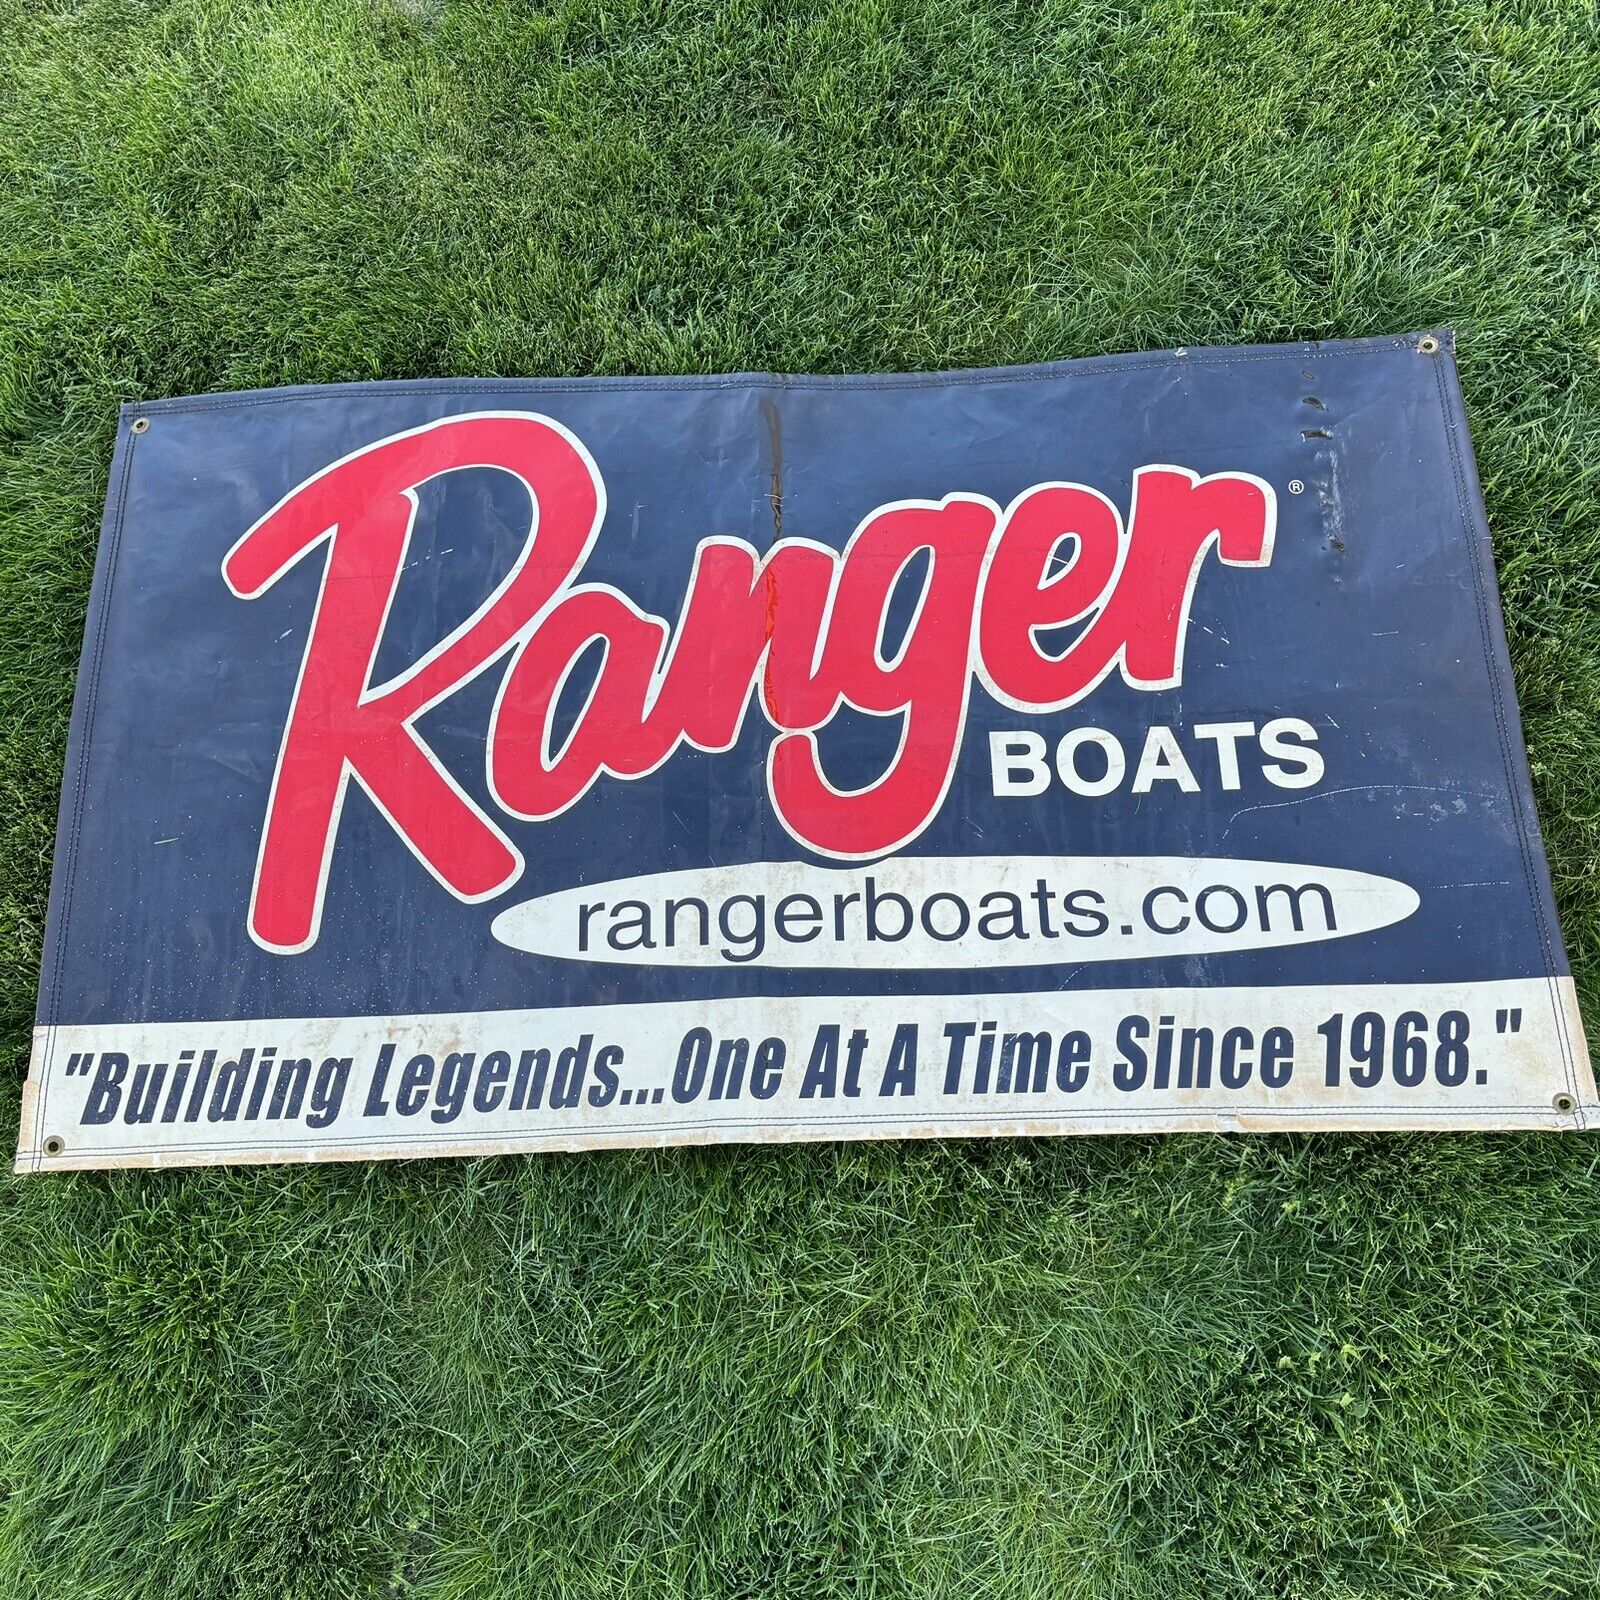 Vintage Ranger Boats Vinyl Dealer Banner Sign, Building Legends Since 1968